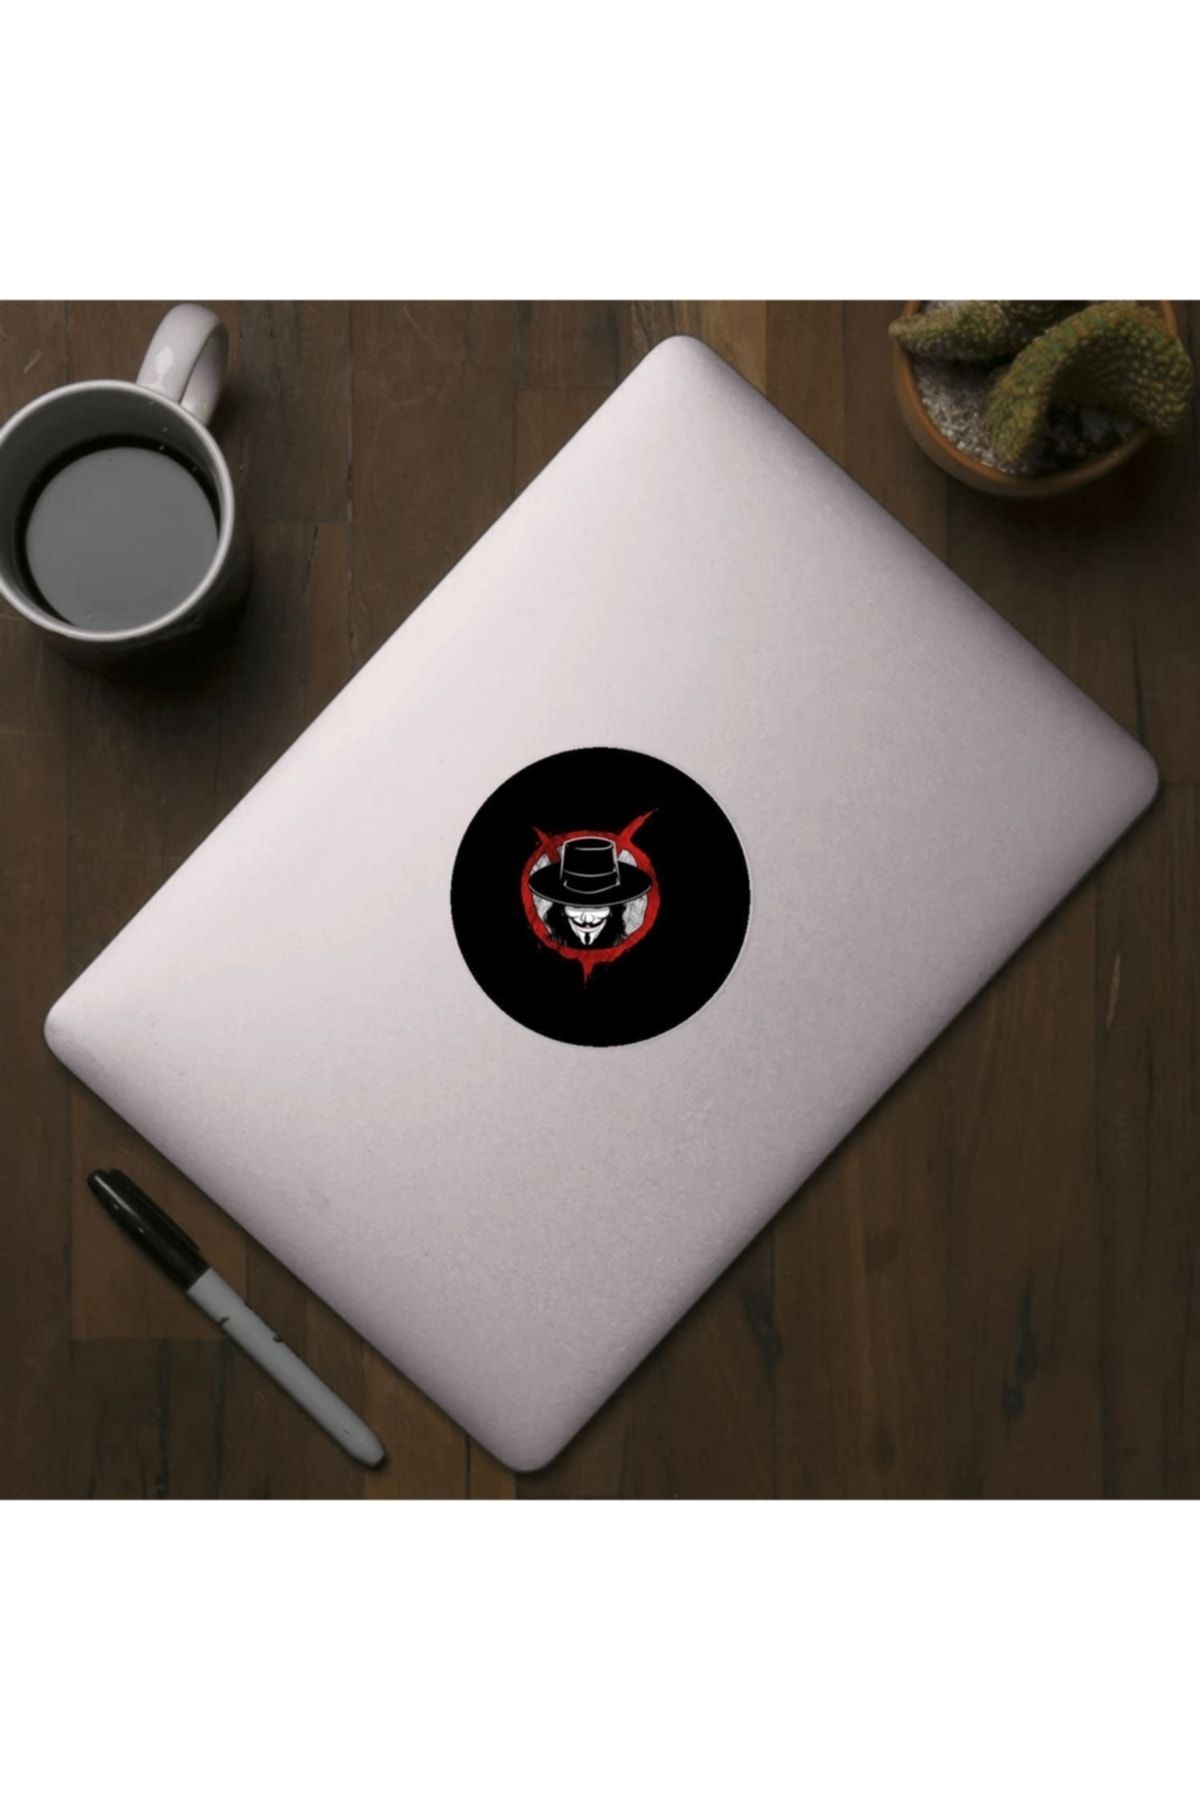 Fizello Monalisa For Vendetta Sticker